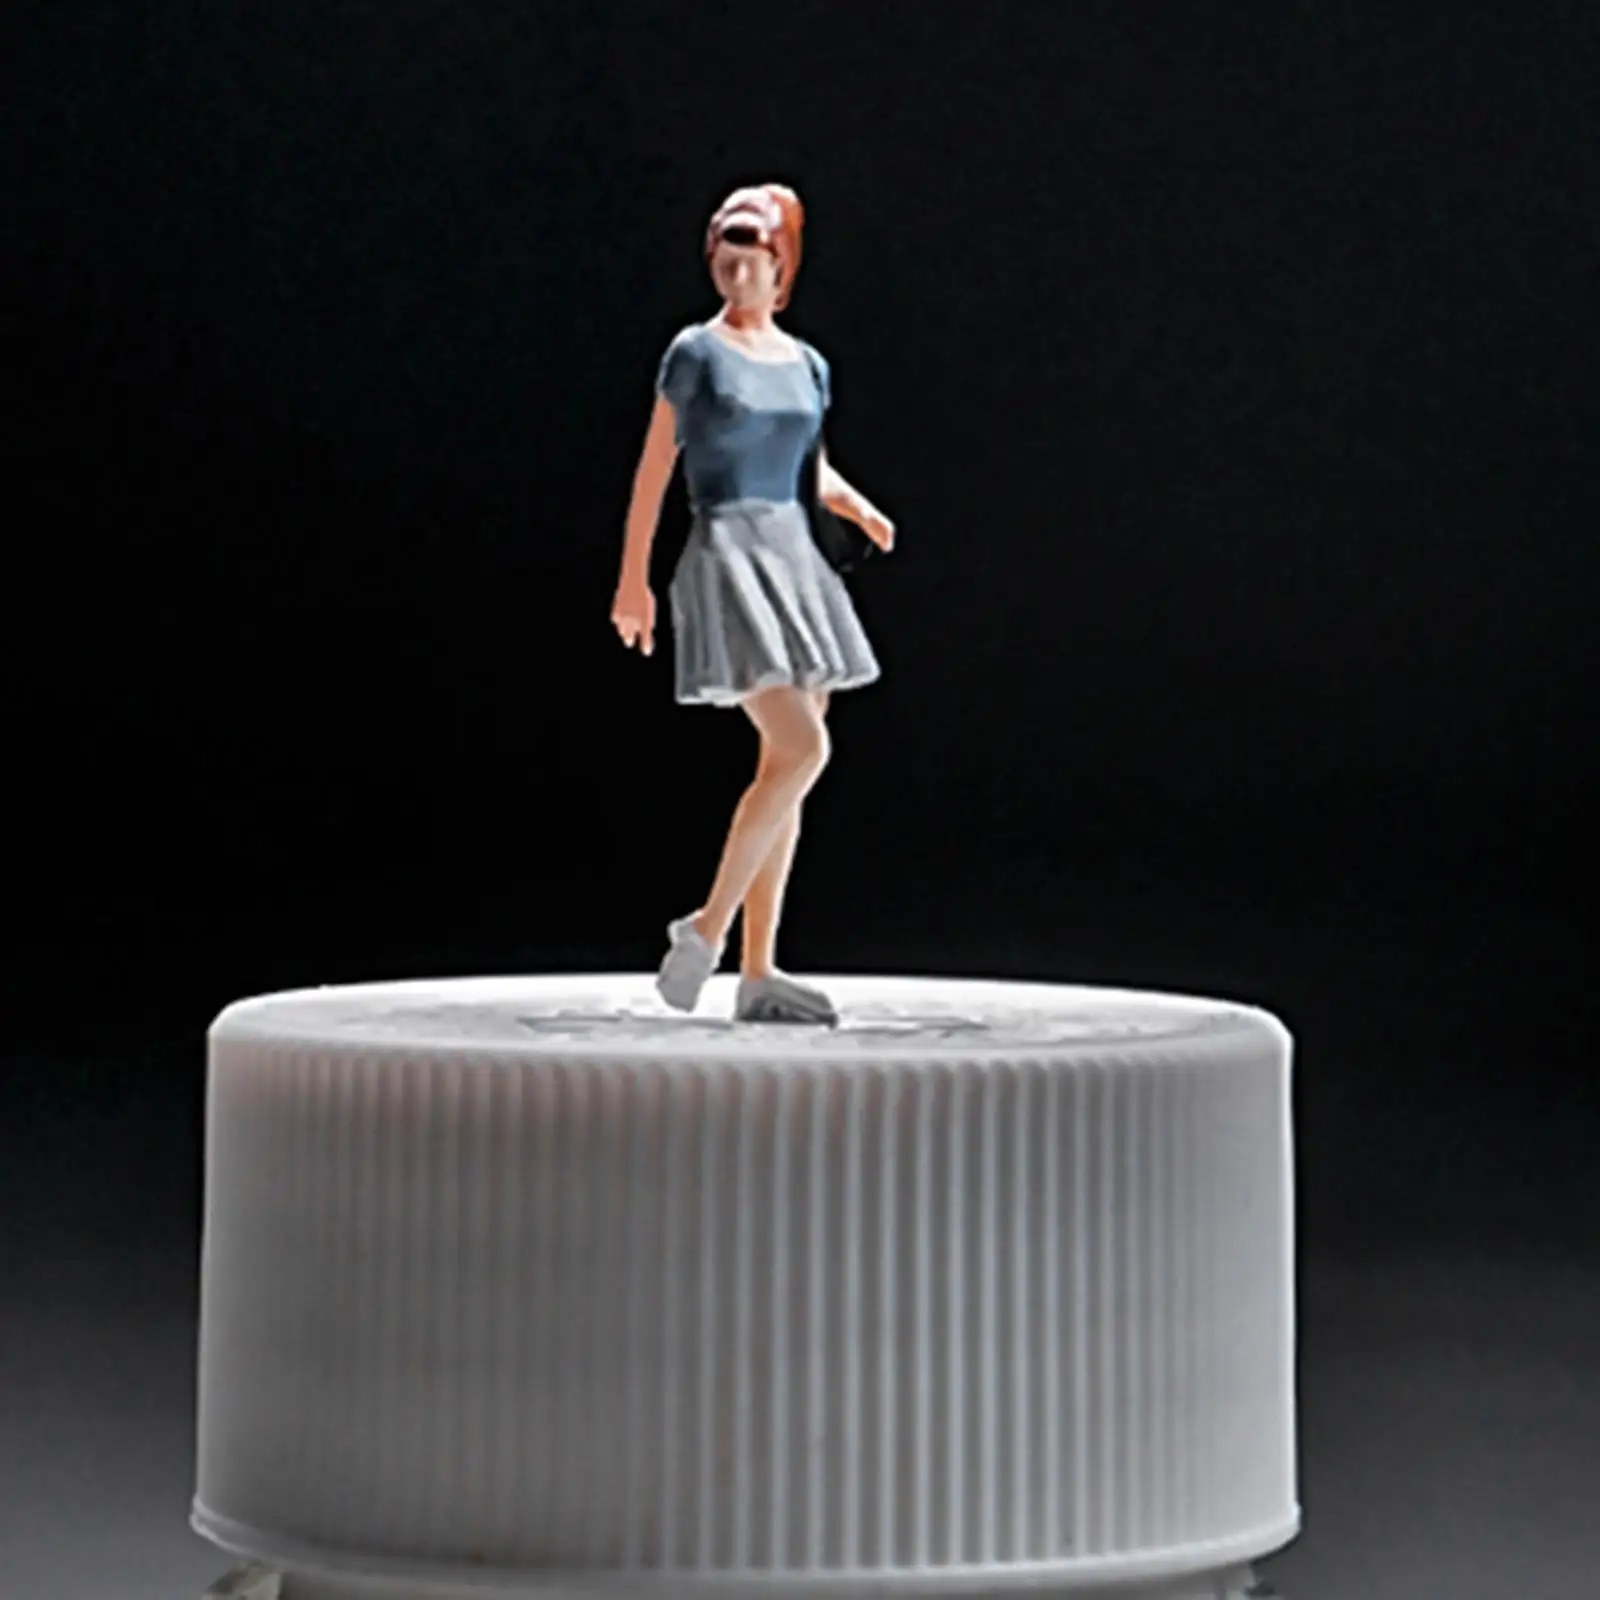 

Масштаб 1/64, миниатюрная фигурка, синяя юбка, расположение сцены для девушек, для железной дороги, коллекции, модель для сада, архитектурная модель поезда